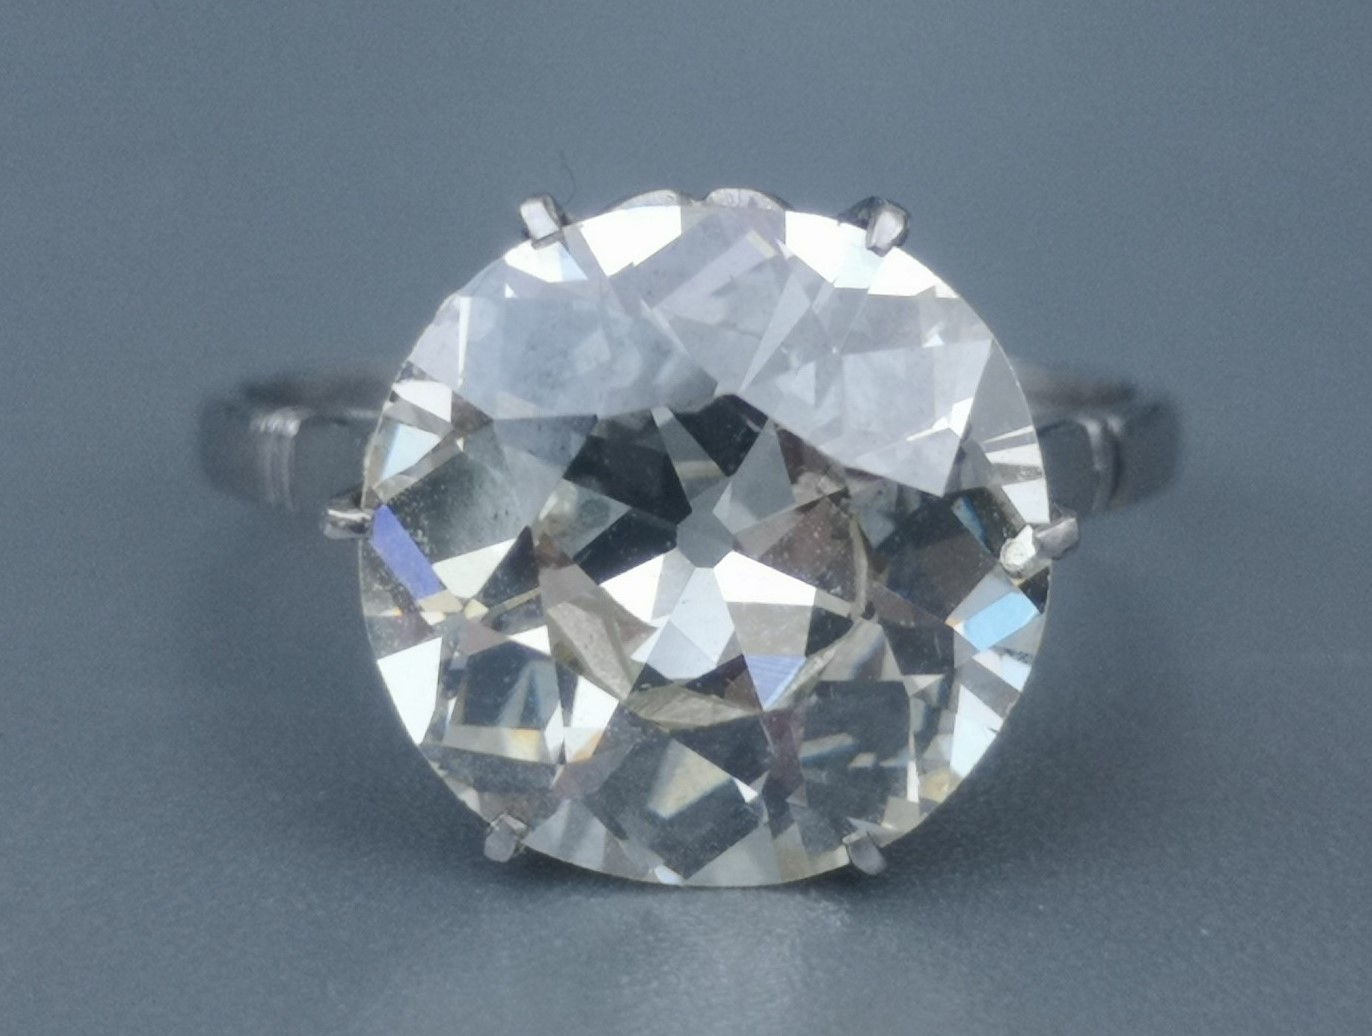 5.5 carat diamond solitaire diamond ring